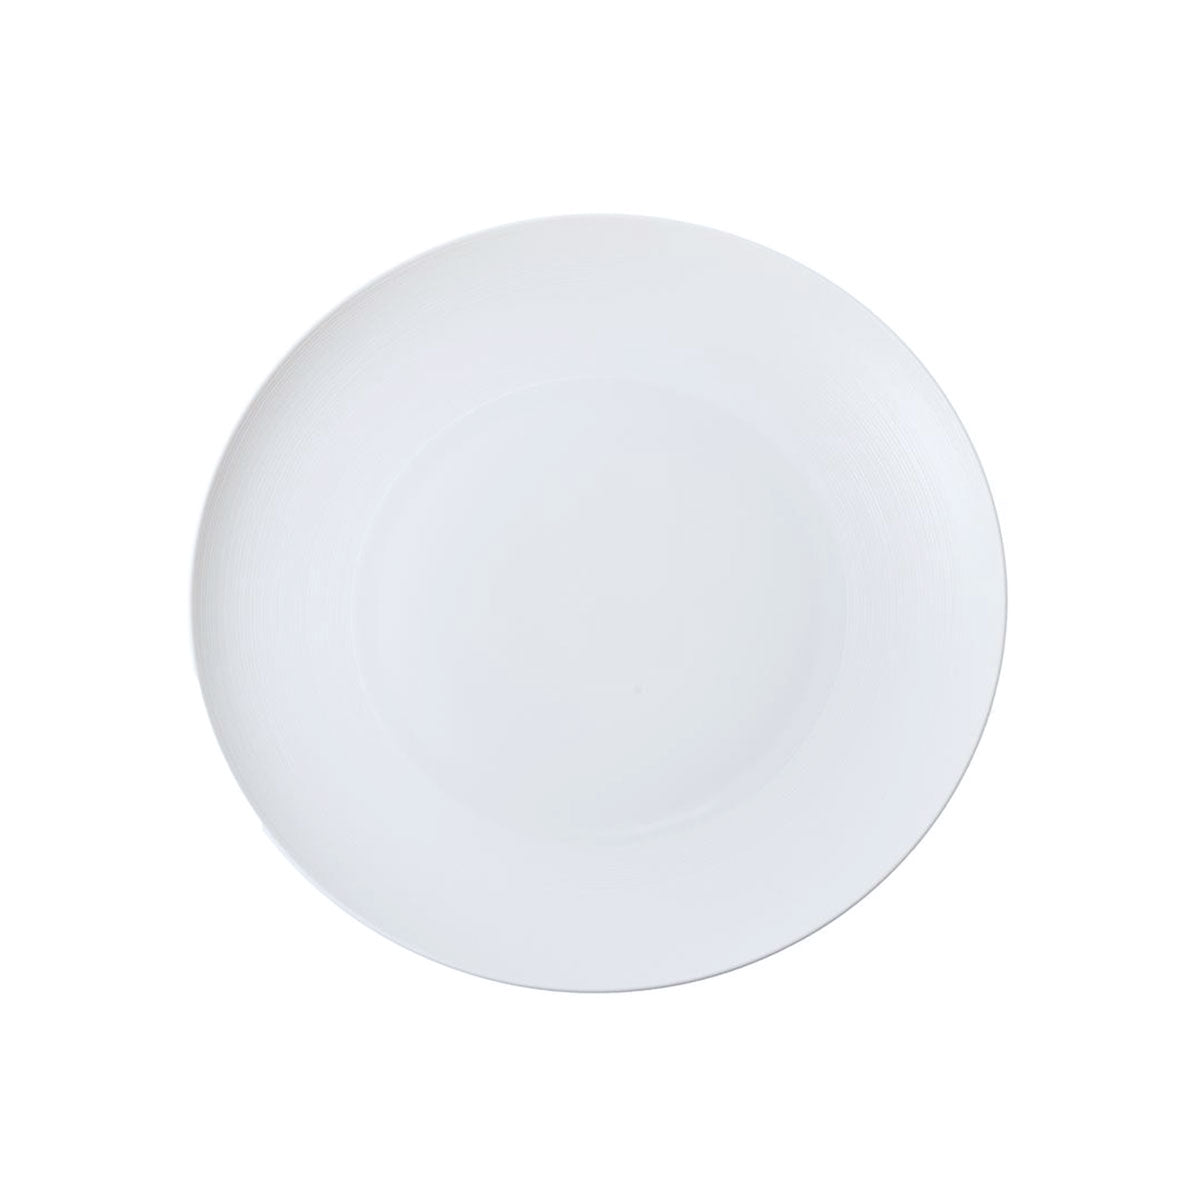 HEMISPHERE White Satin - Flat round dish, medium